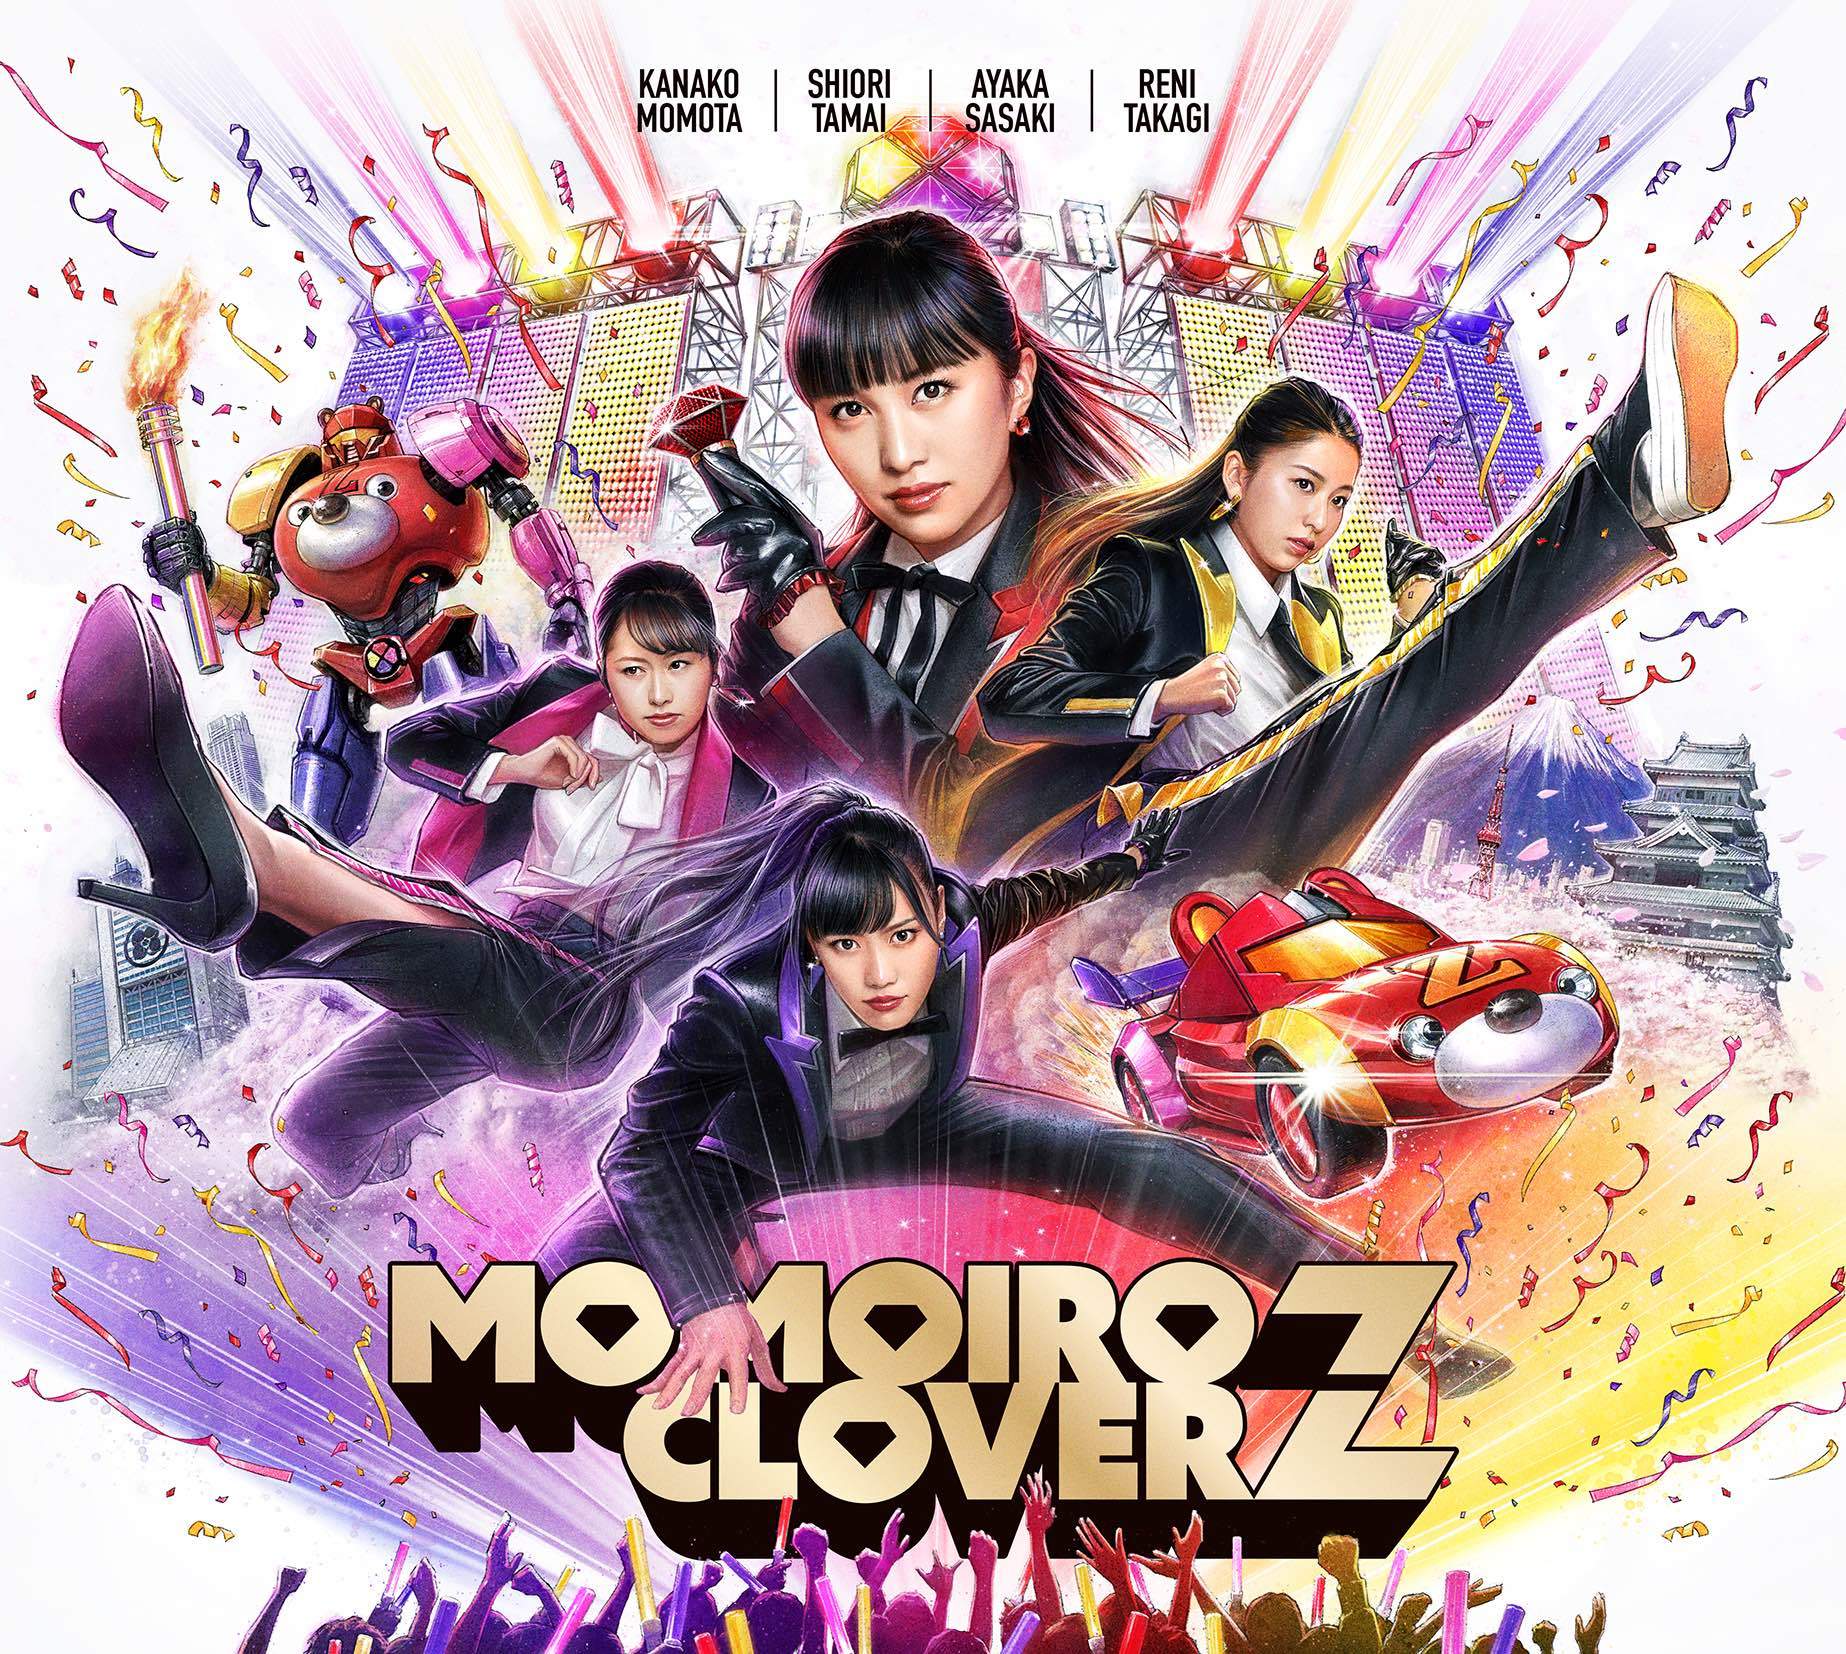 ももいろクローバーZ 5thアルバム『MOMOIRO CLOVER Z』(初回限定盤A) 高画質CDジャケット